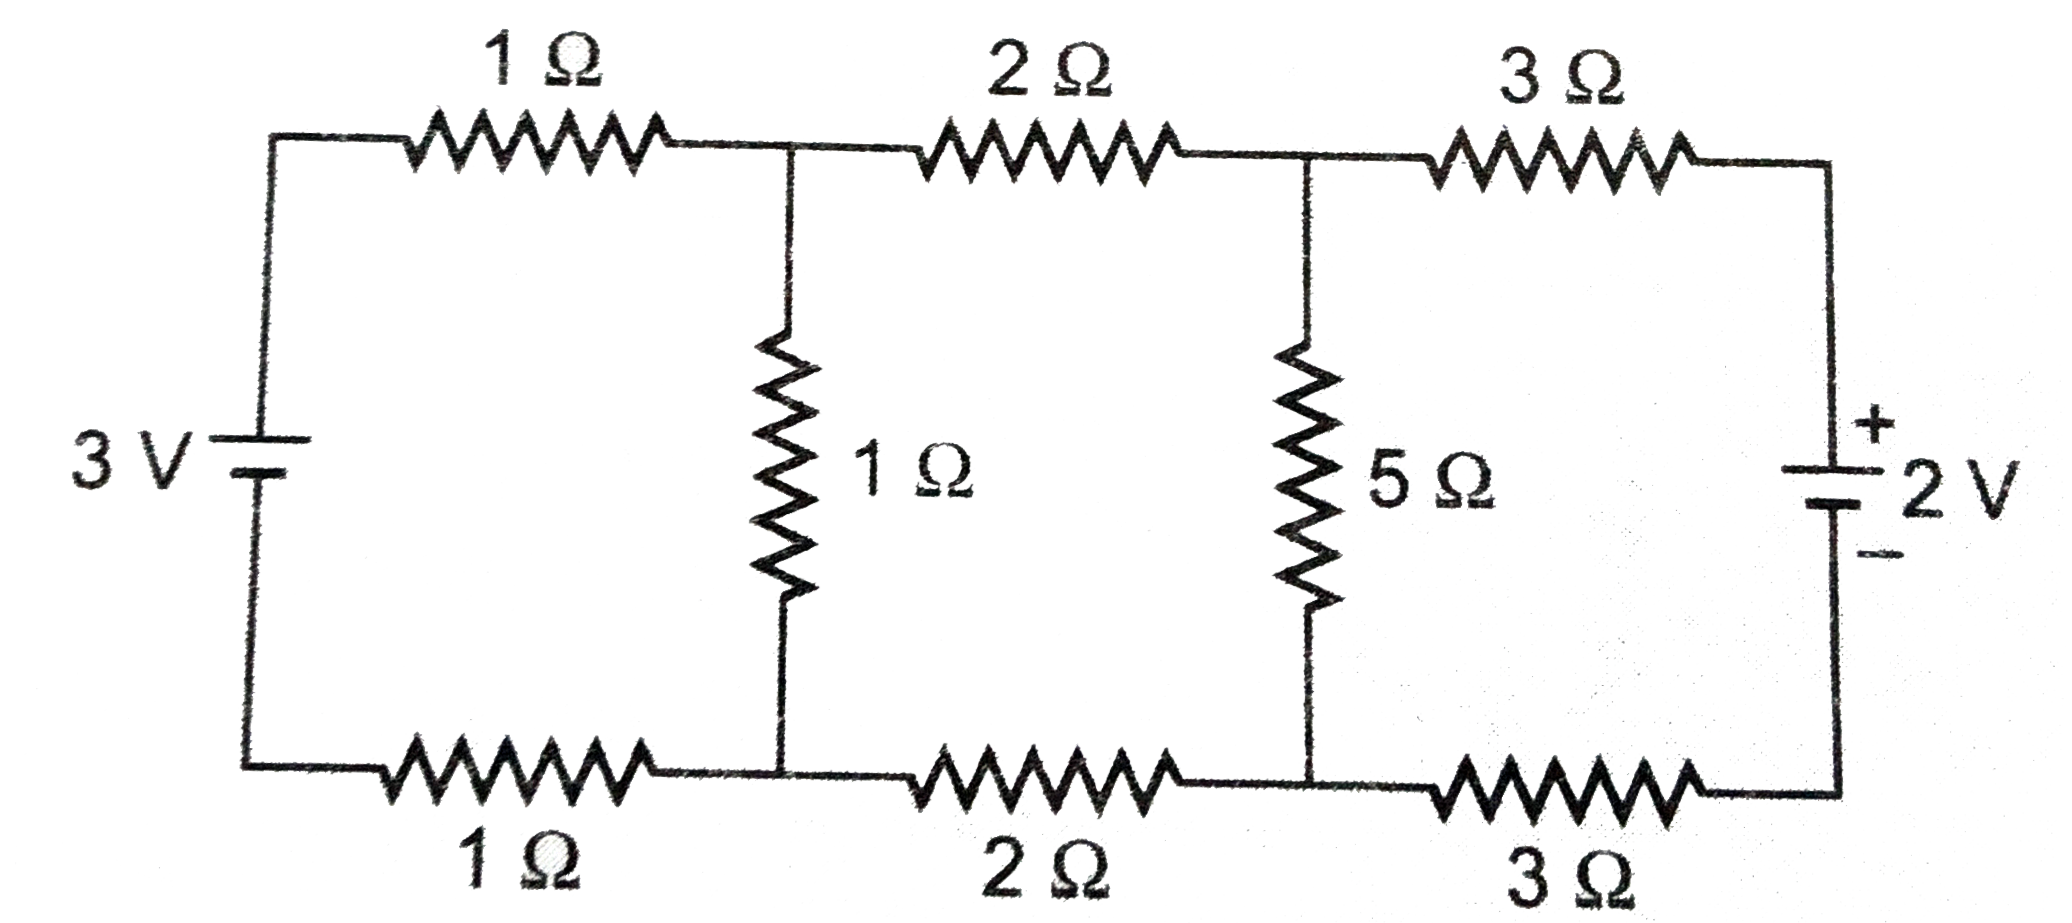 किरचॉफ के नियमों की सहायता  से संलग्न चित्र में प्रदर्शित परिपथ में 5Omega के तार में प्रवाहित धारा के मान गणना कीजिये ।